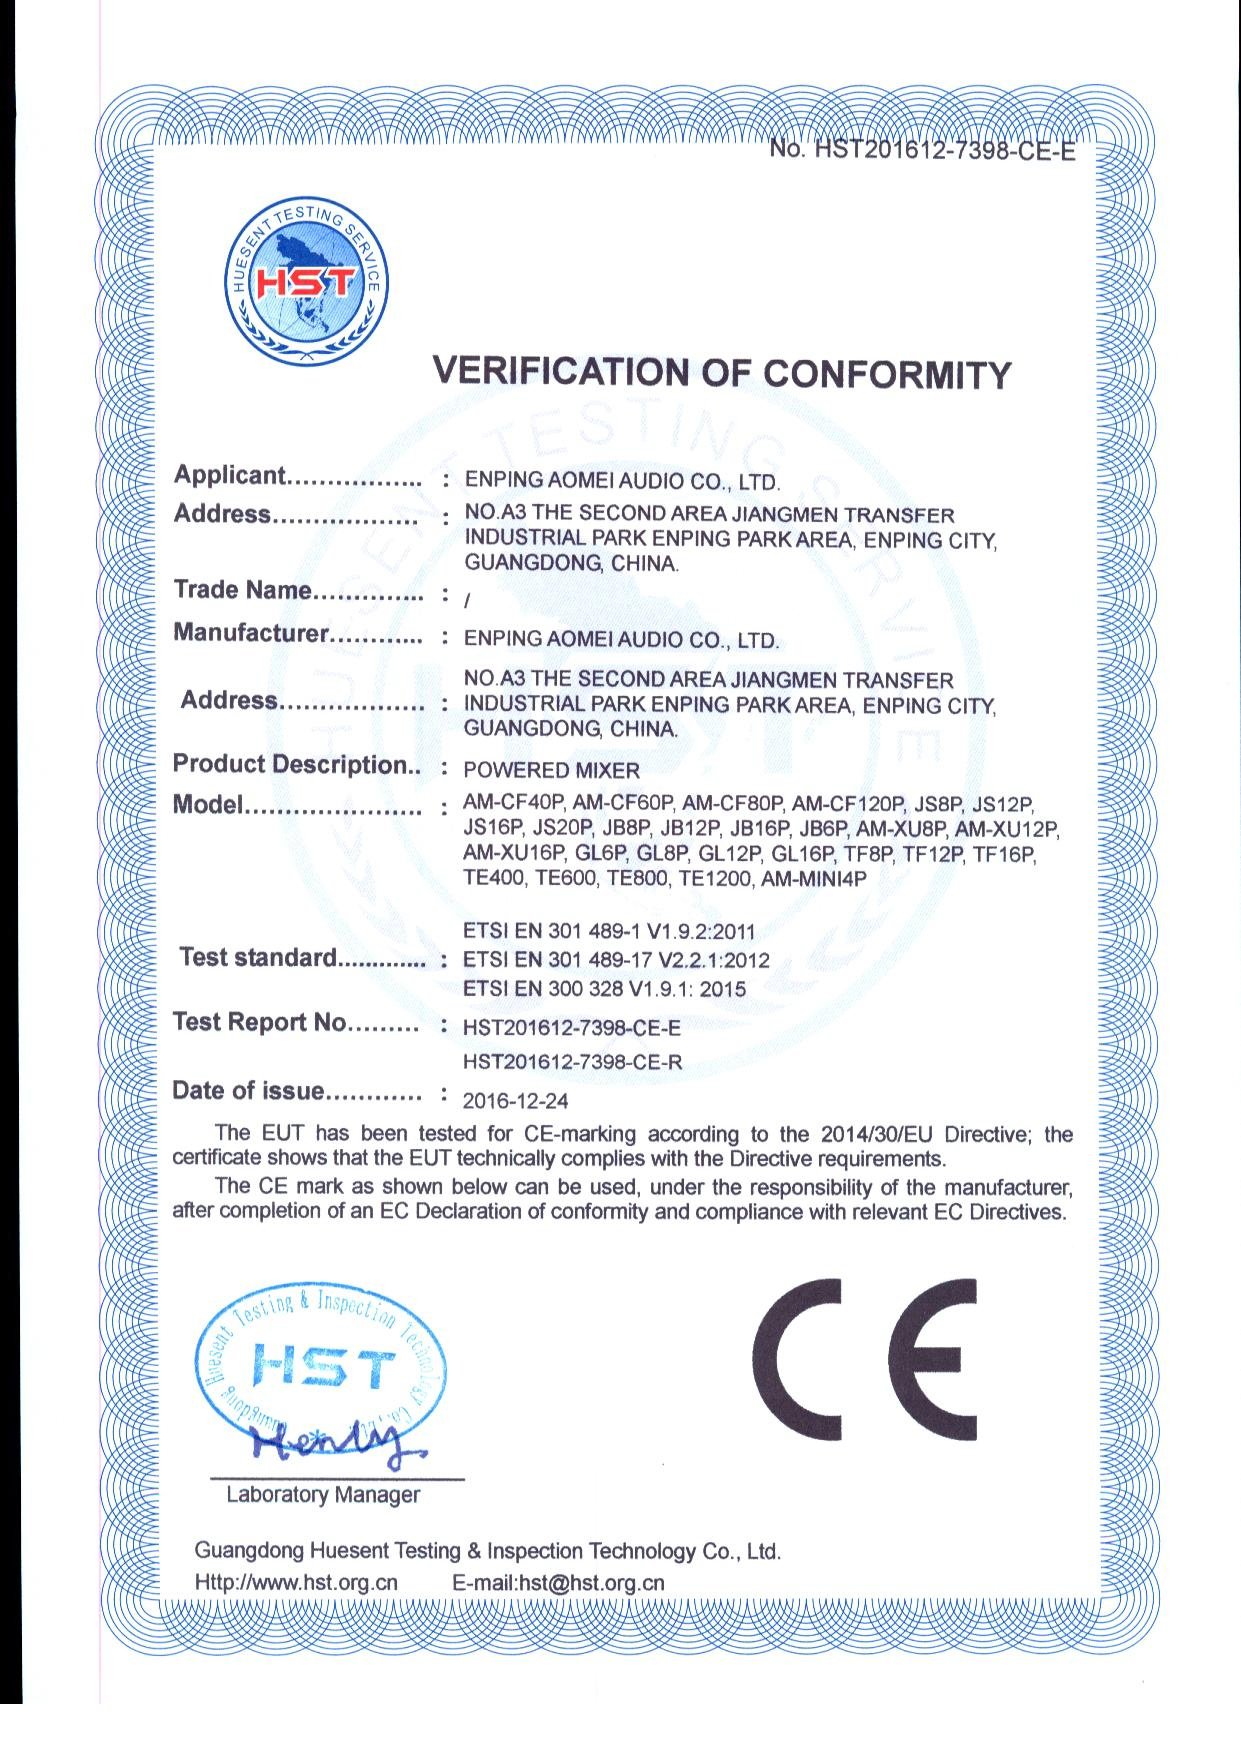 CE-E R certificate